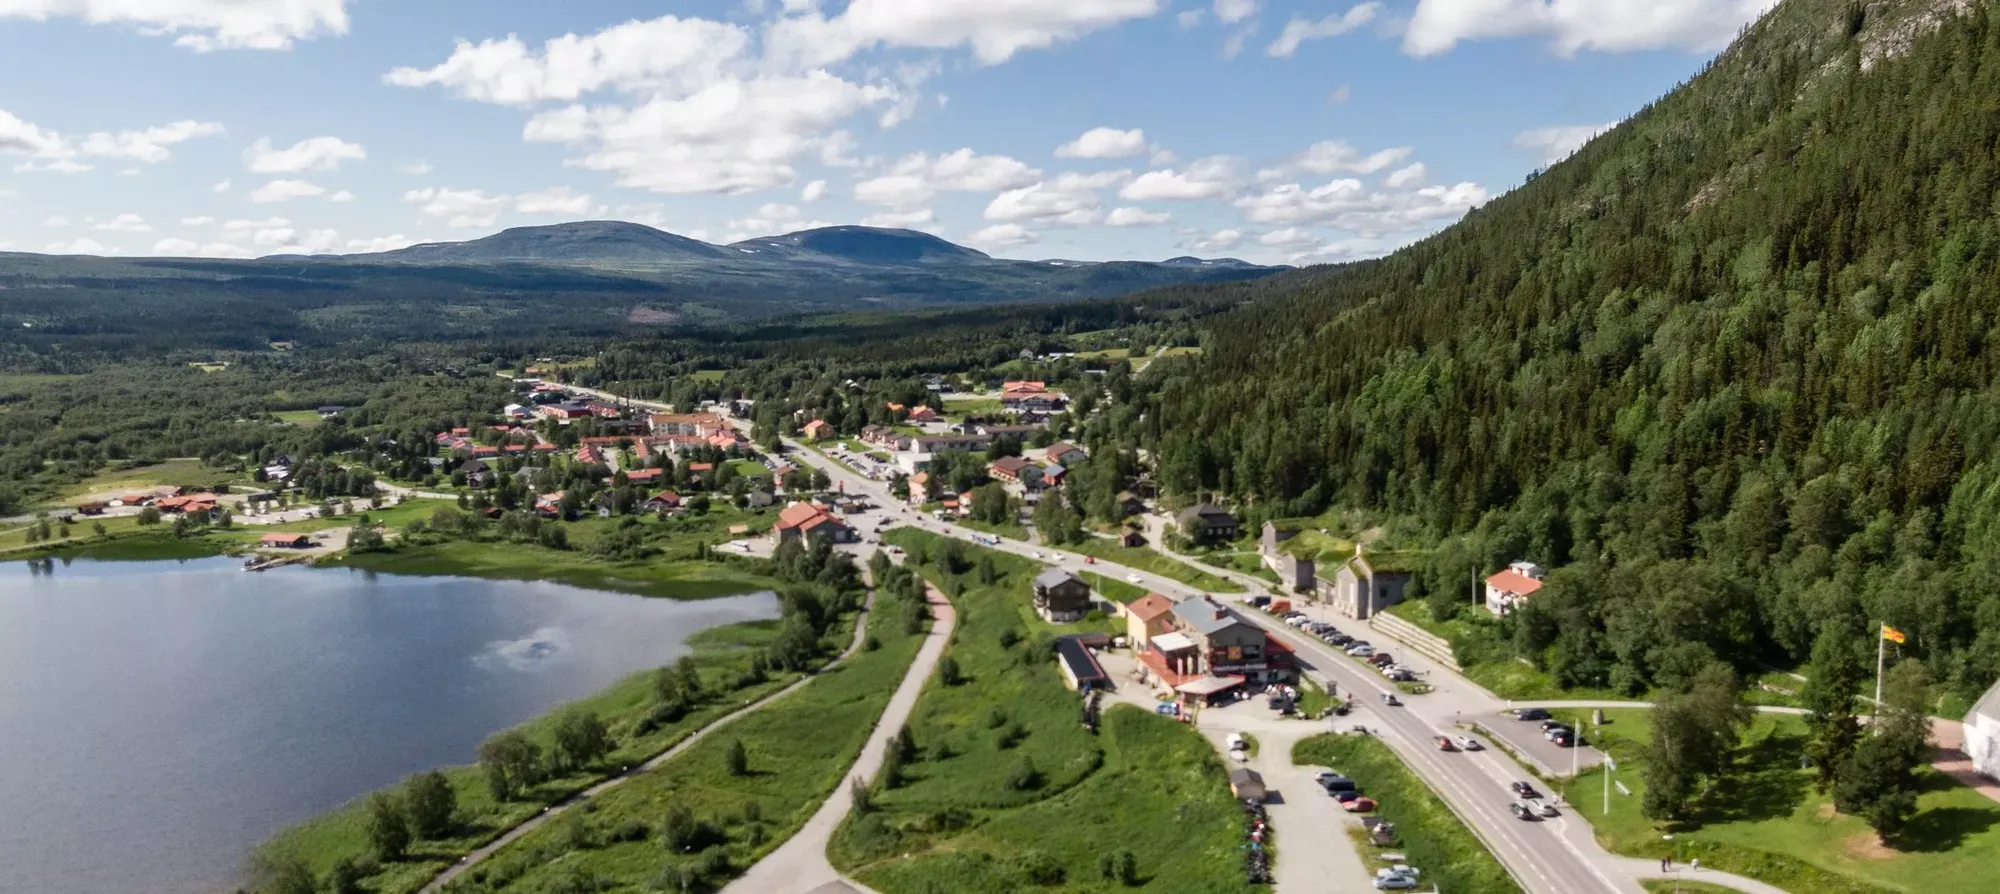 Funasdalen | Ostergotland Region, Sweden - Rated 4.1